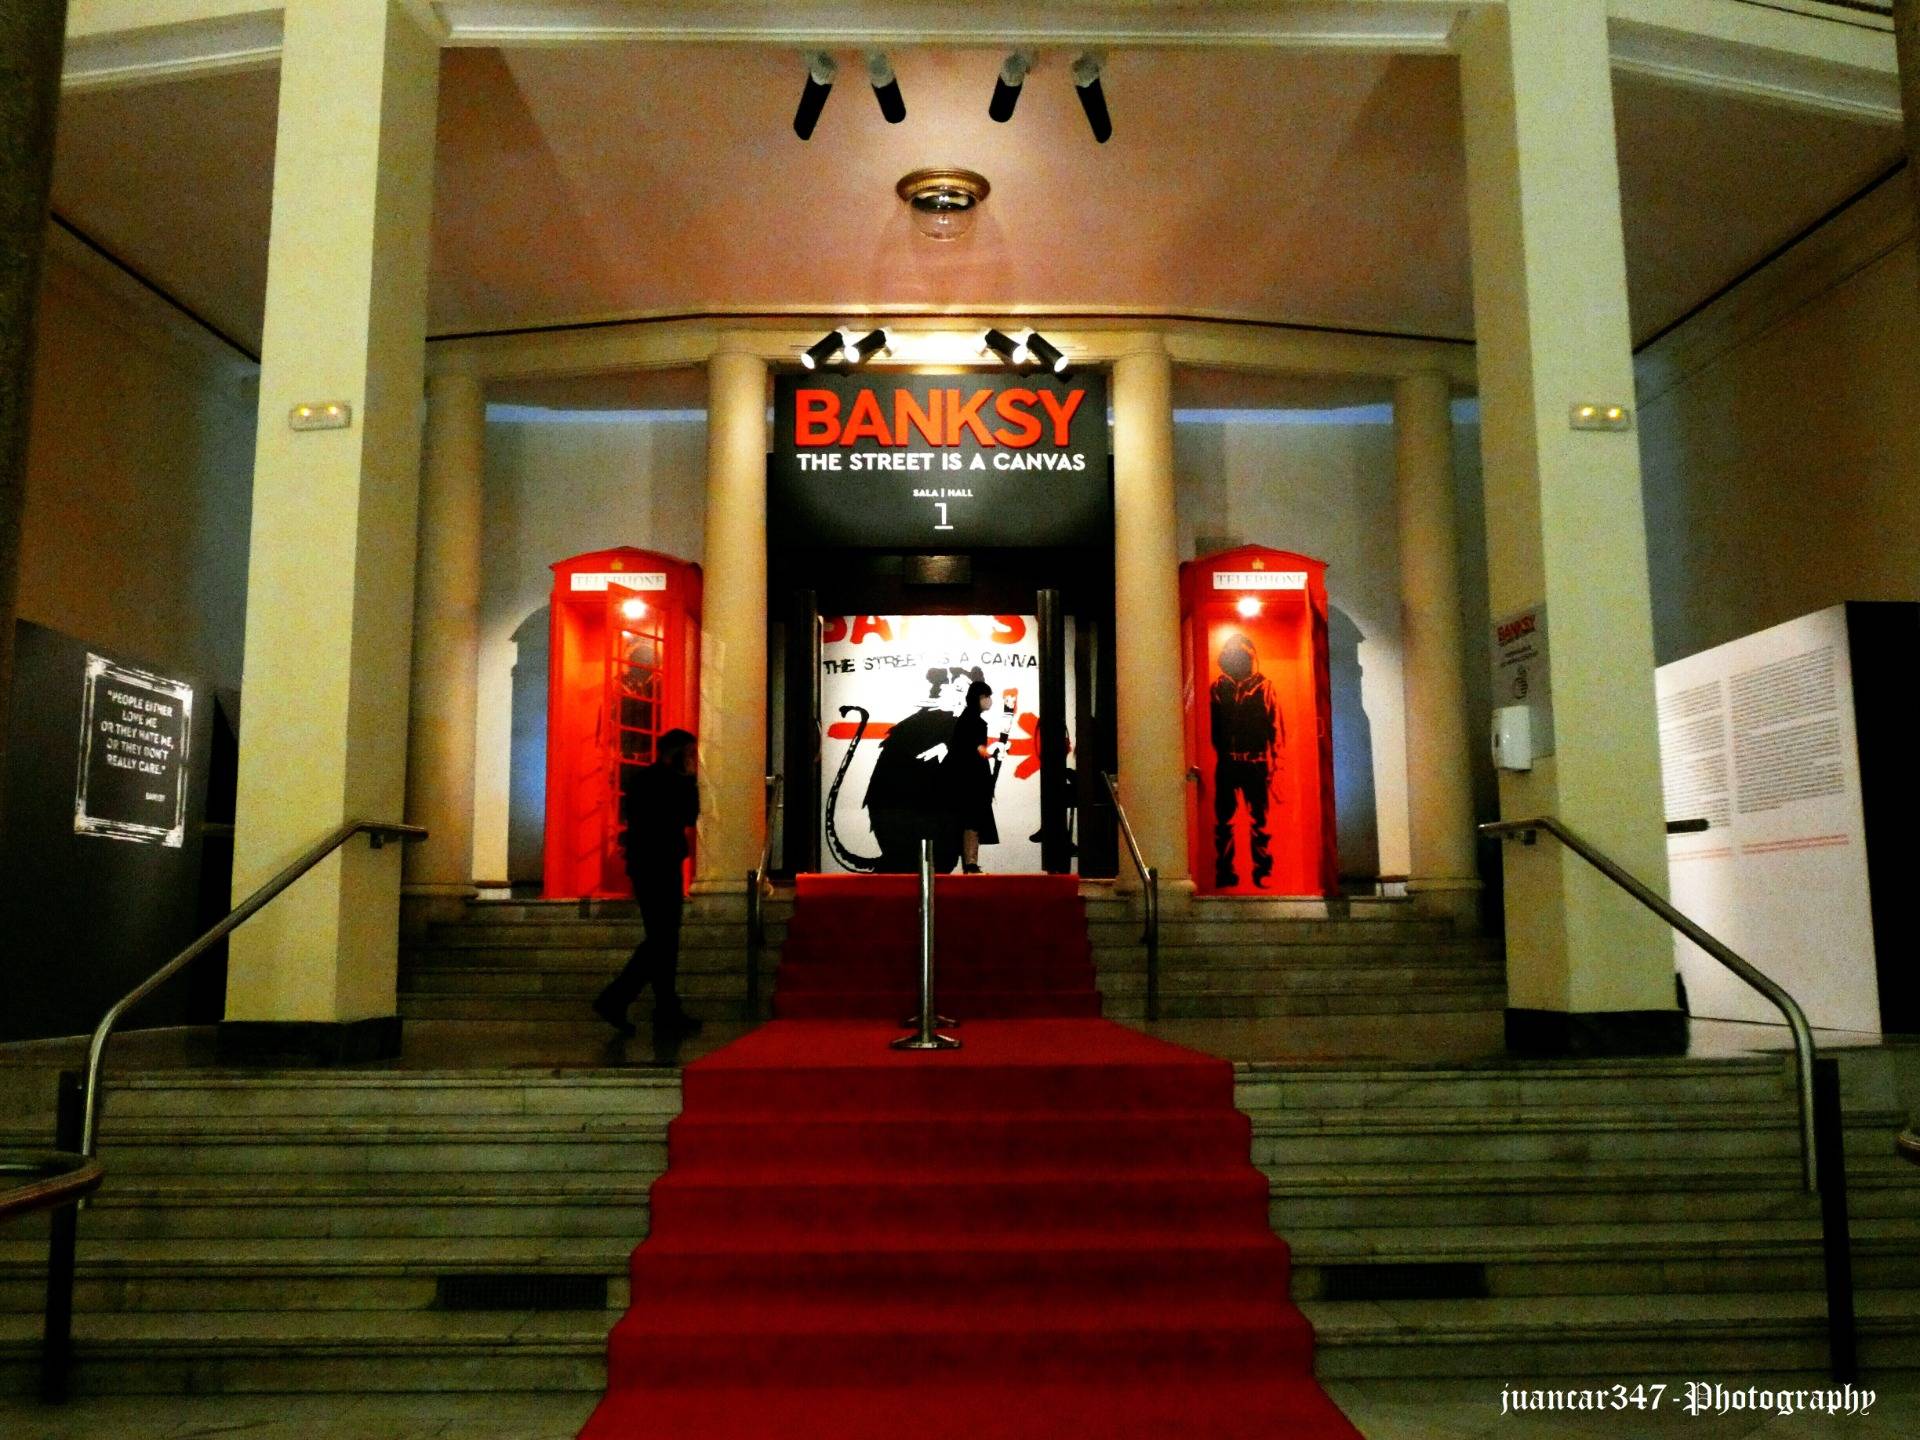 Círculo de Bellas Artes, Madrid: entrance to the exhibition